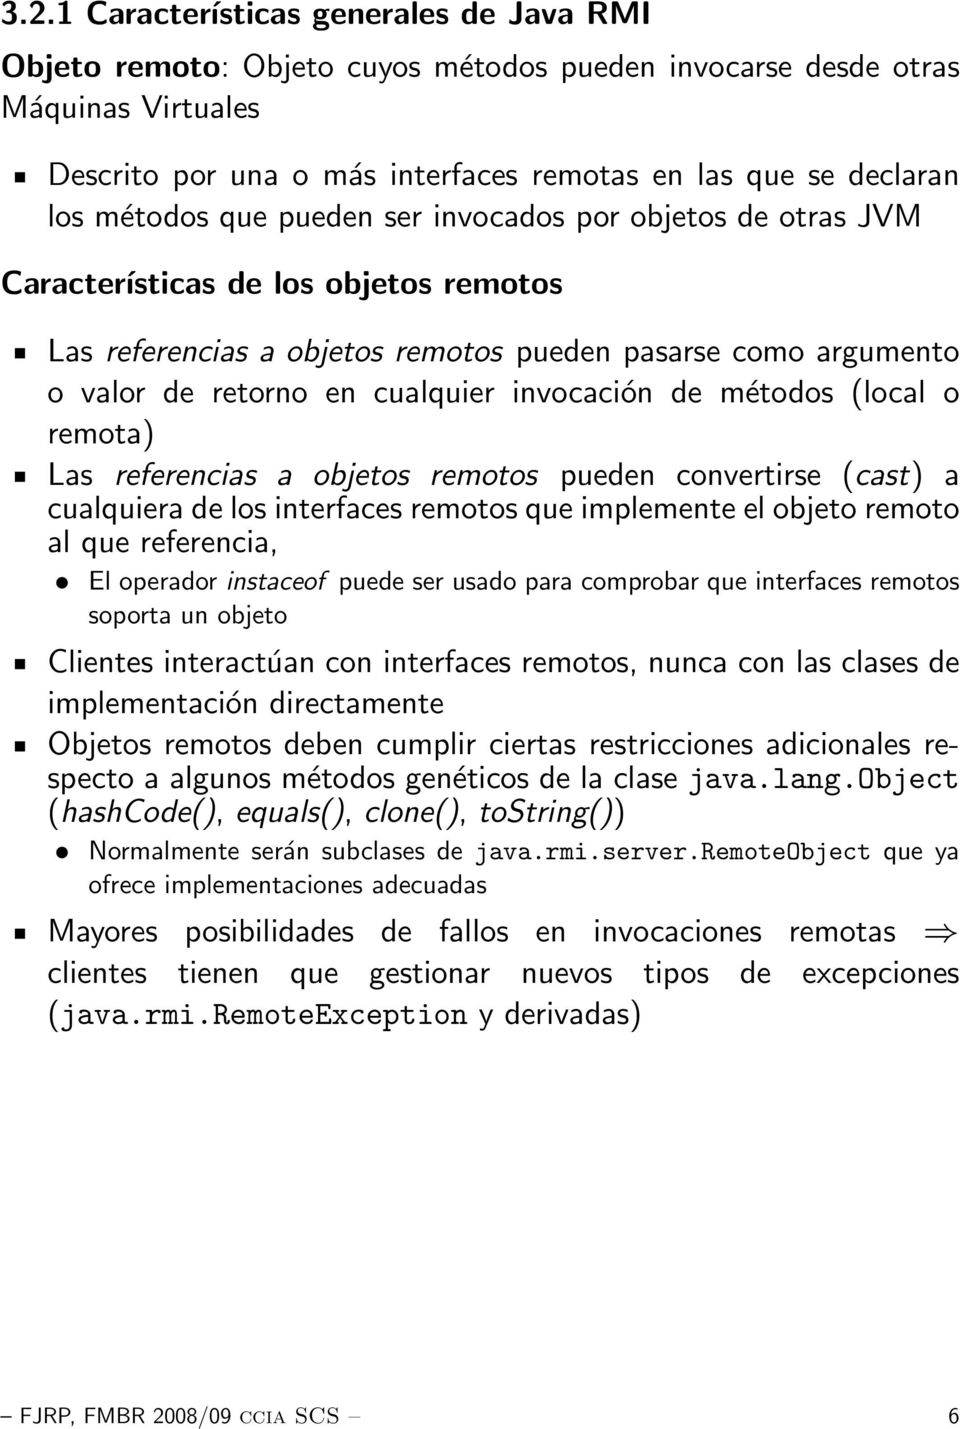 invocación de métodos (local o remota) Las referencias a objetos remotos pueden convertirse (cast) a cualquiera de los interfaces remotos que implemente el objeto remoto al que referencia, El